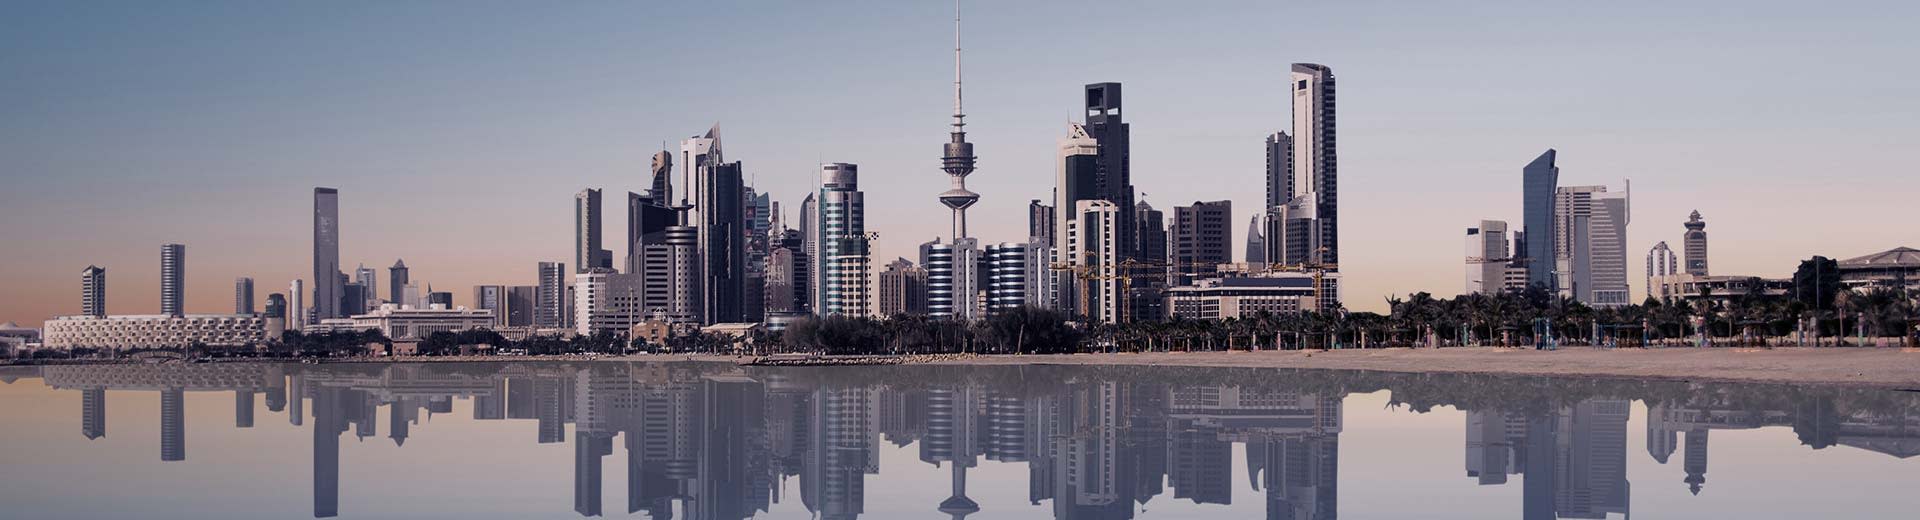 科威特城现代化的宏伟天际线矗立在一片水域之前。